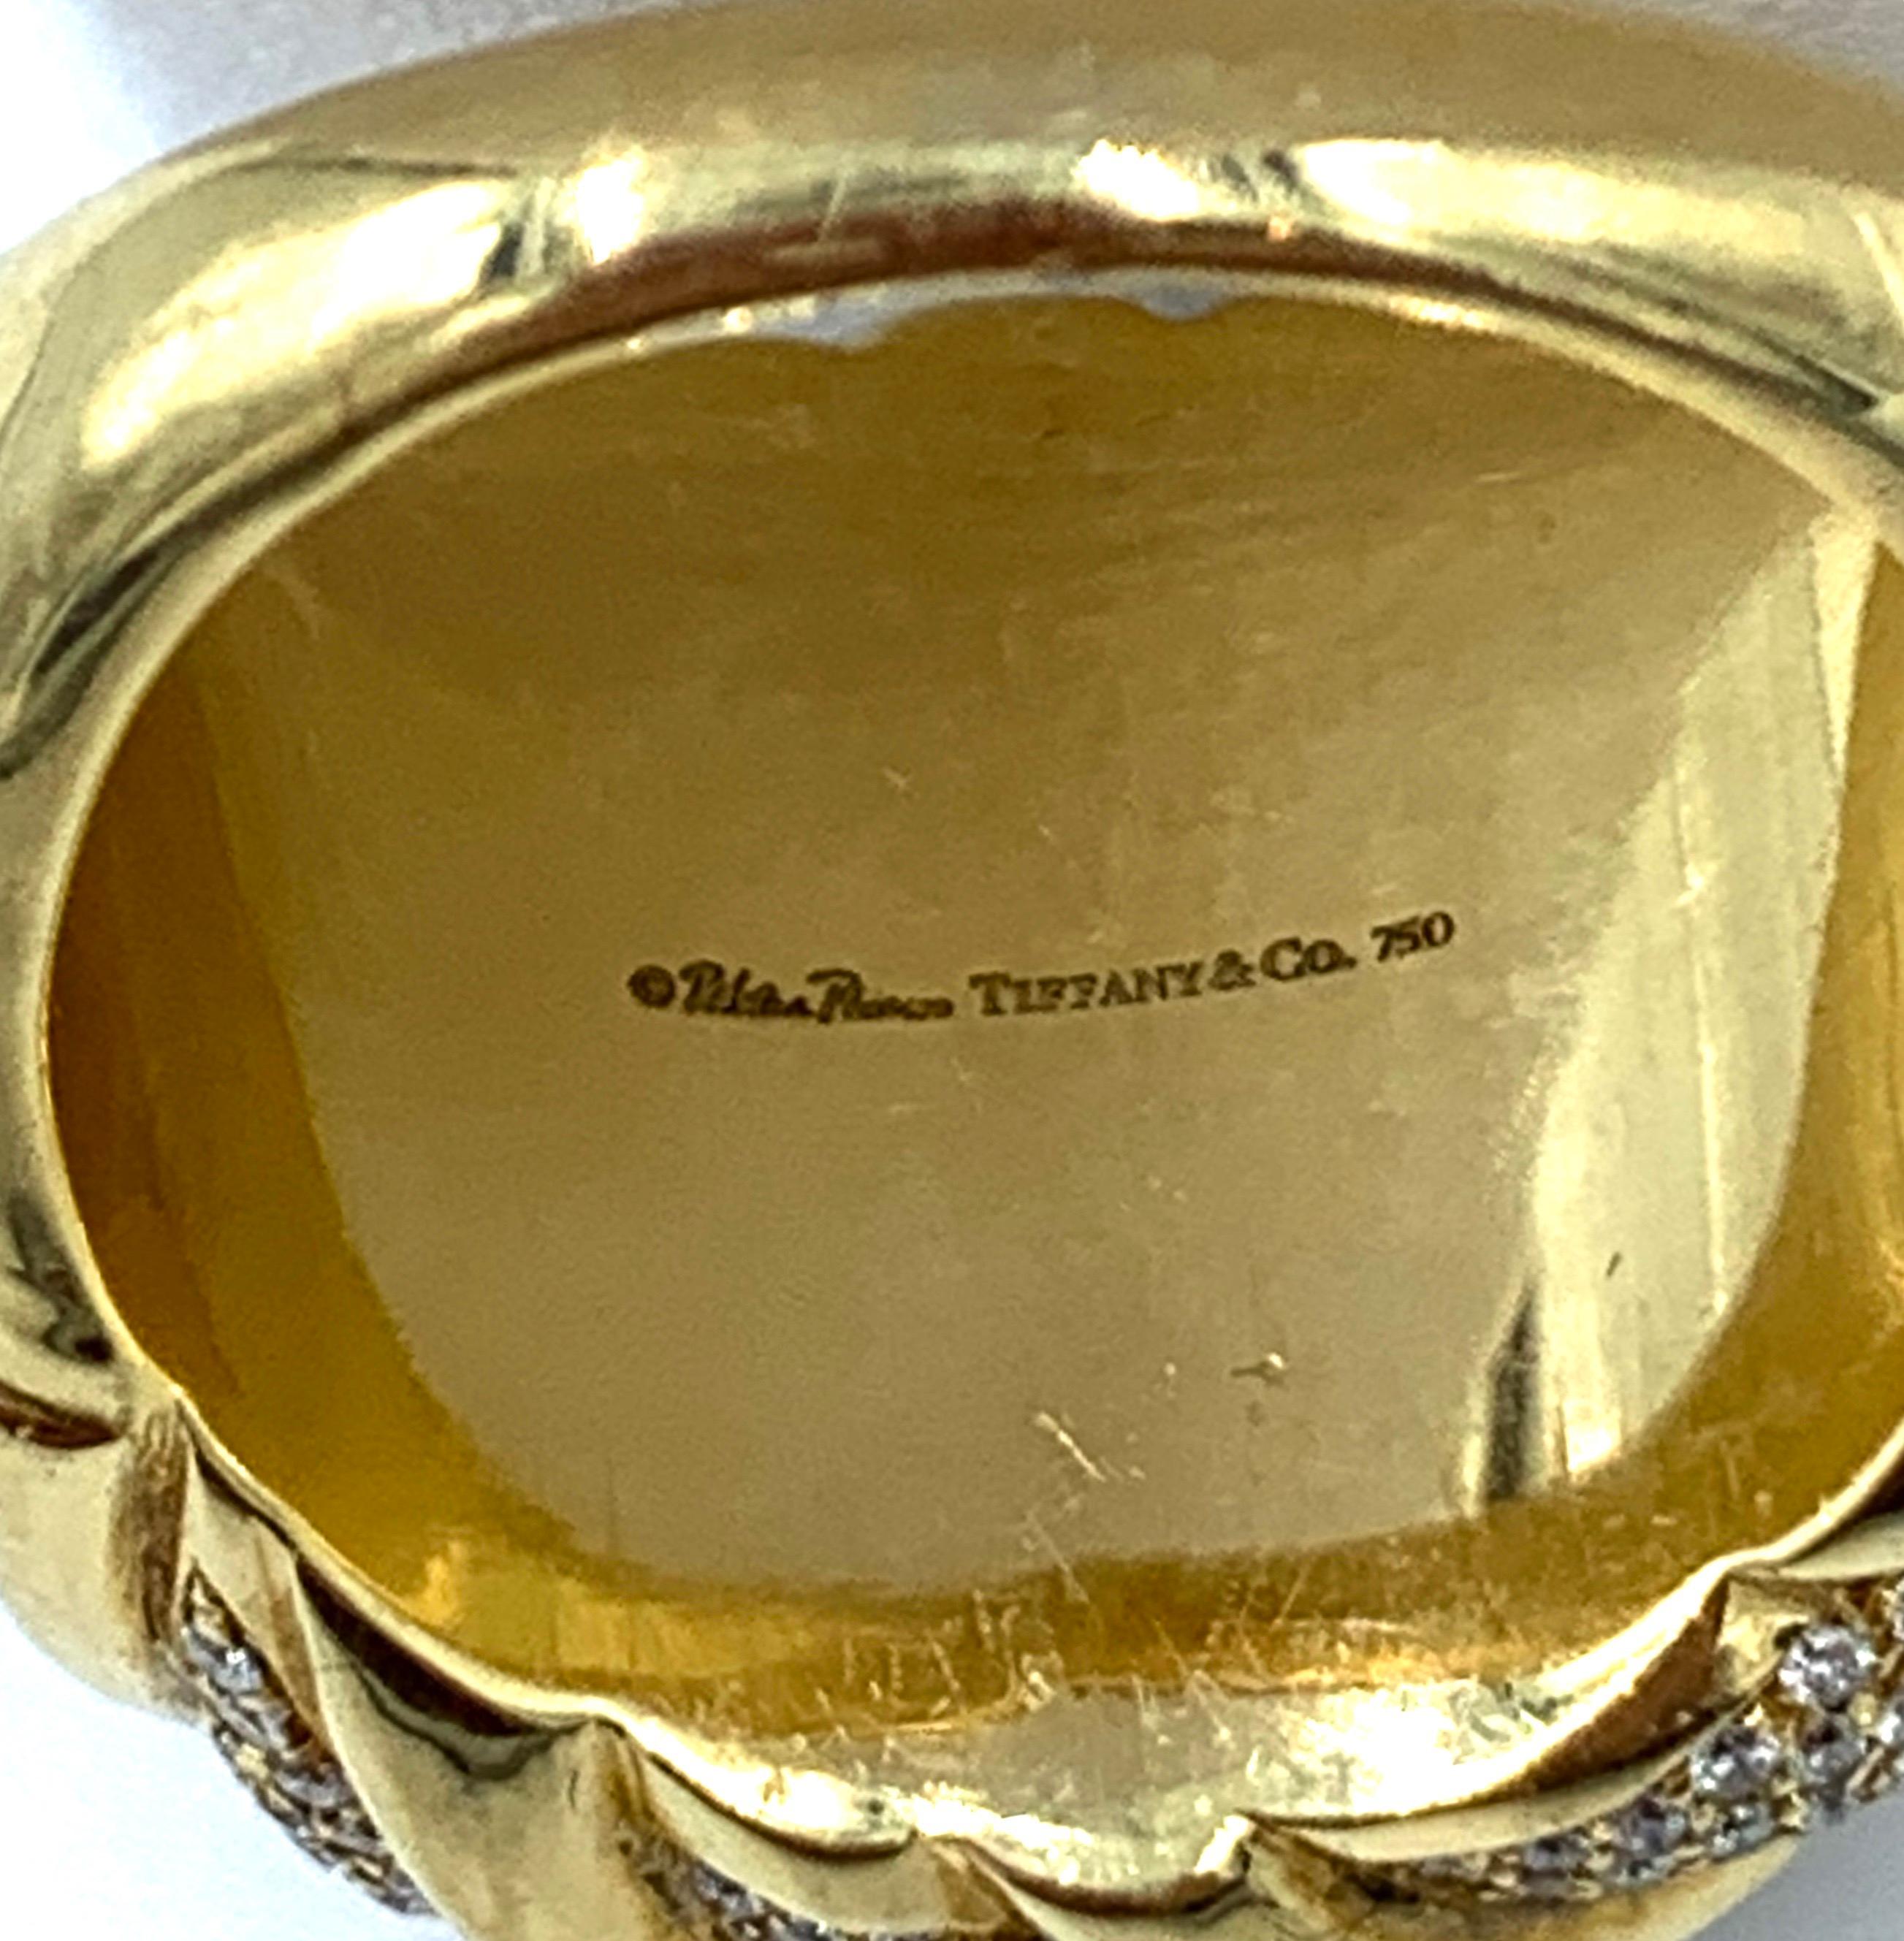 tiffany trinity ring